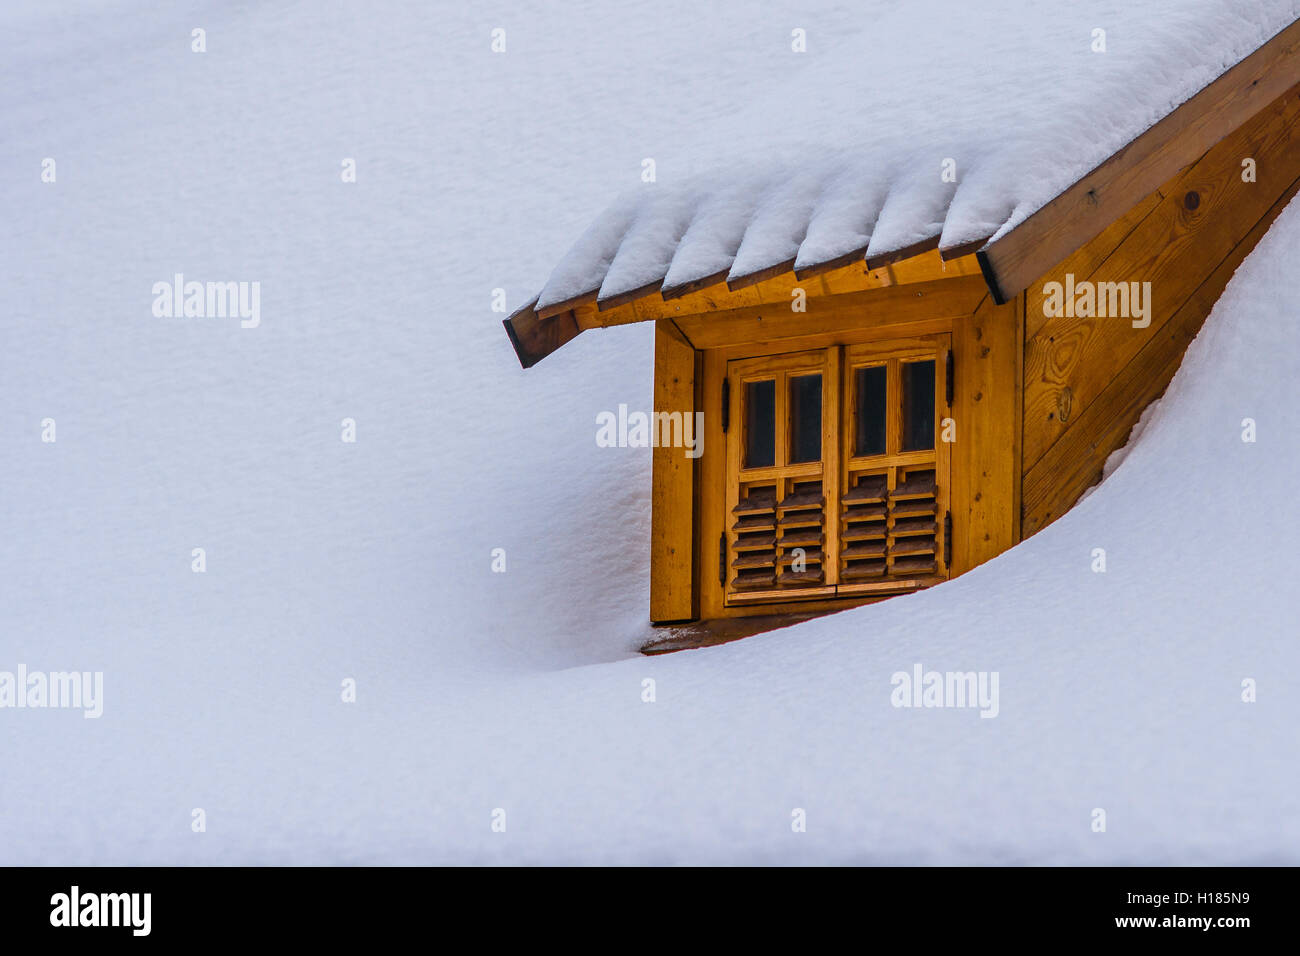 Lucarne sur un toit couvert de neige d'un bâtiment. Contraste de bois marron foncé de la lucarne et de la neige fraîche et blanche. Espace libre pour ent Banque D'Images